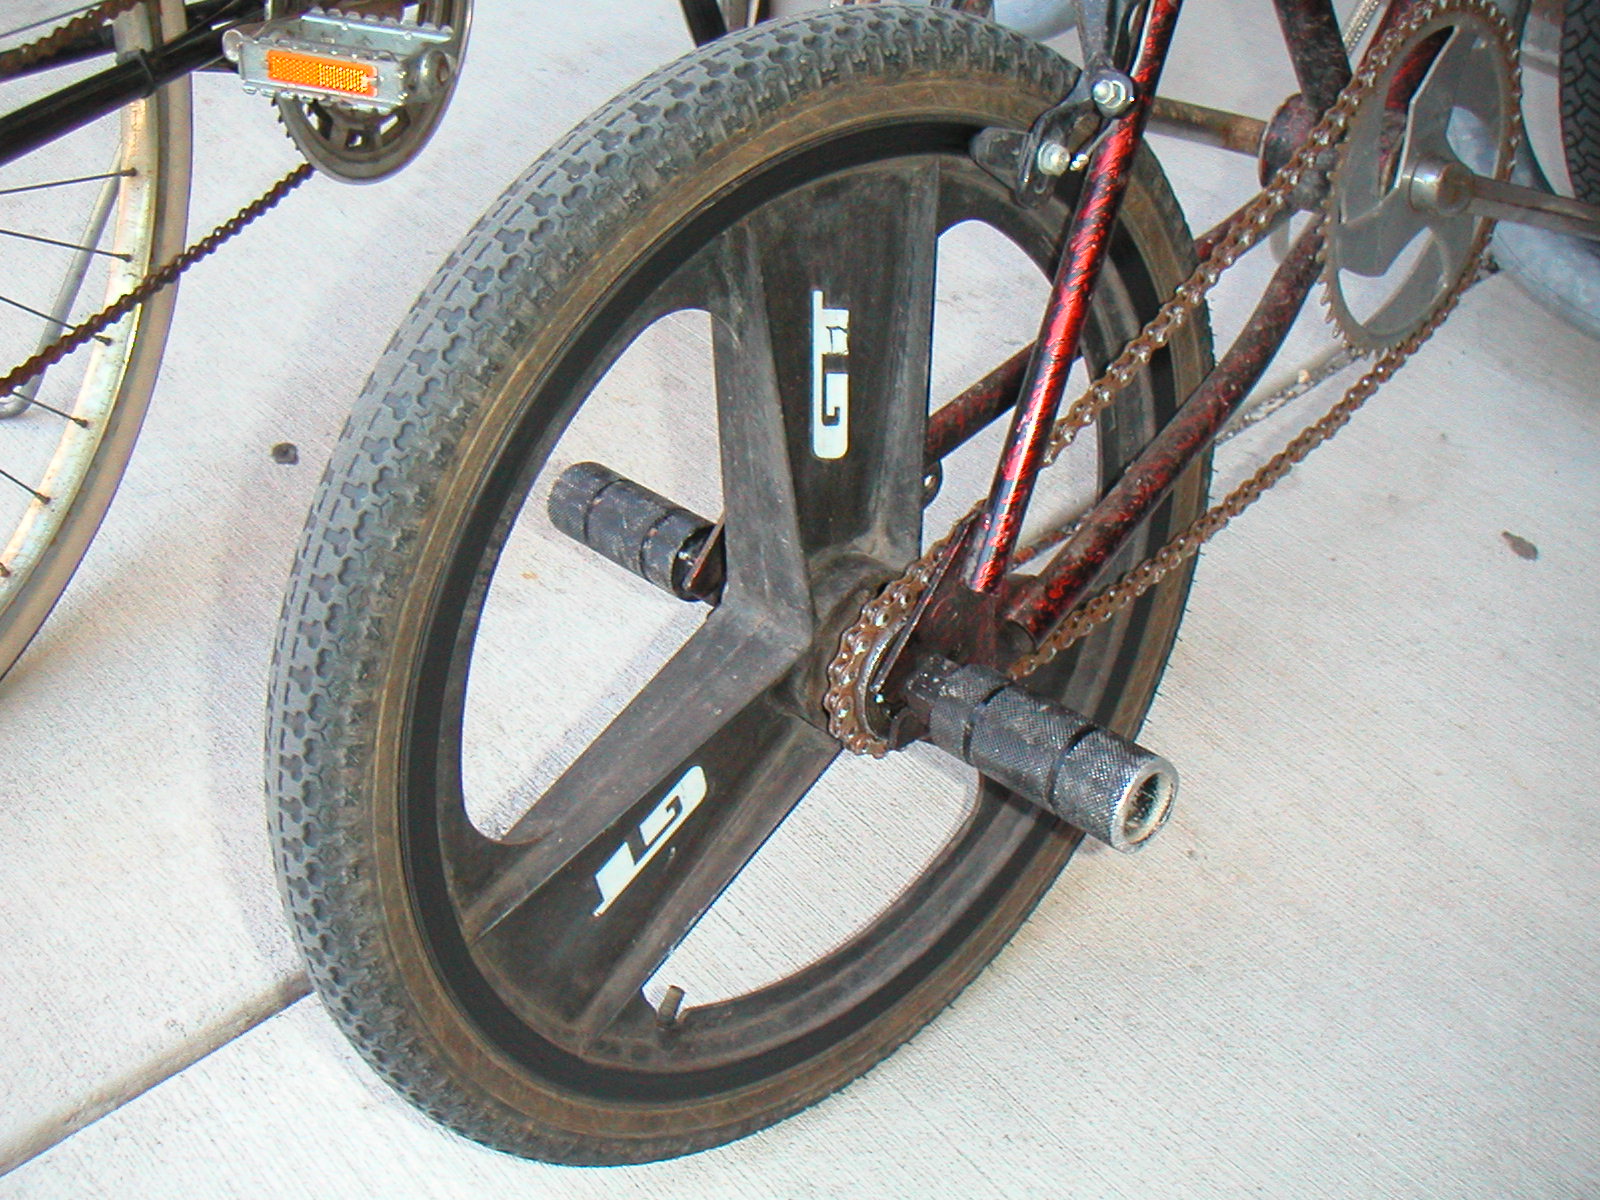 bmx big wheel bike